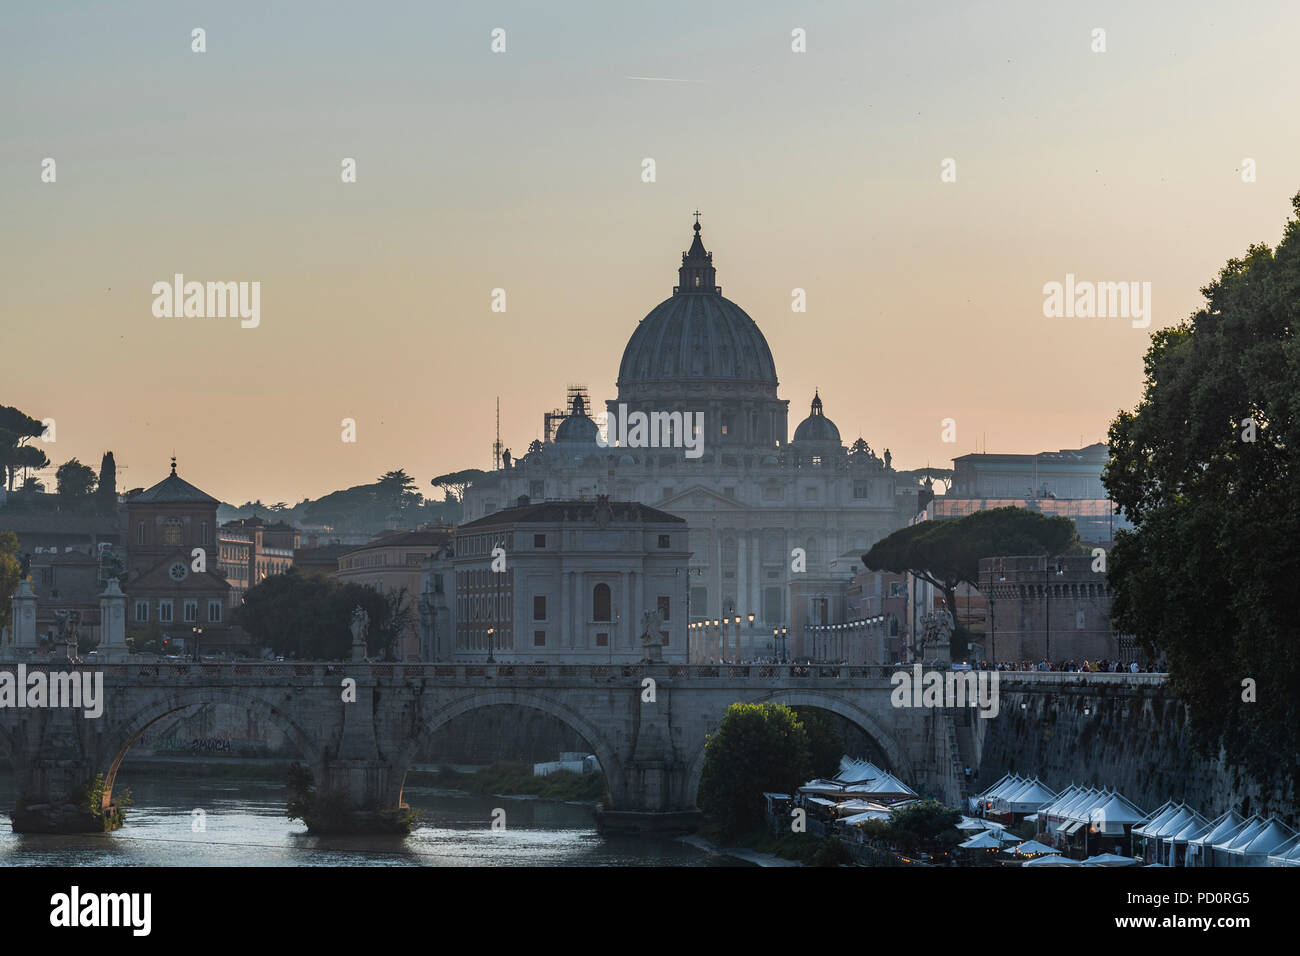 Città del Vaticano vista da Umberto I bridge al tramonto / vista del Vaticano dal Ponte Umberto I al tramonto. Roma, Italia Foto Stock